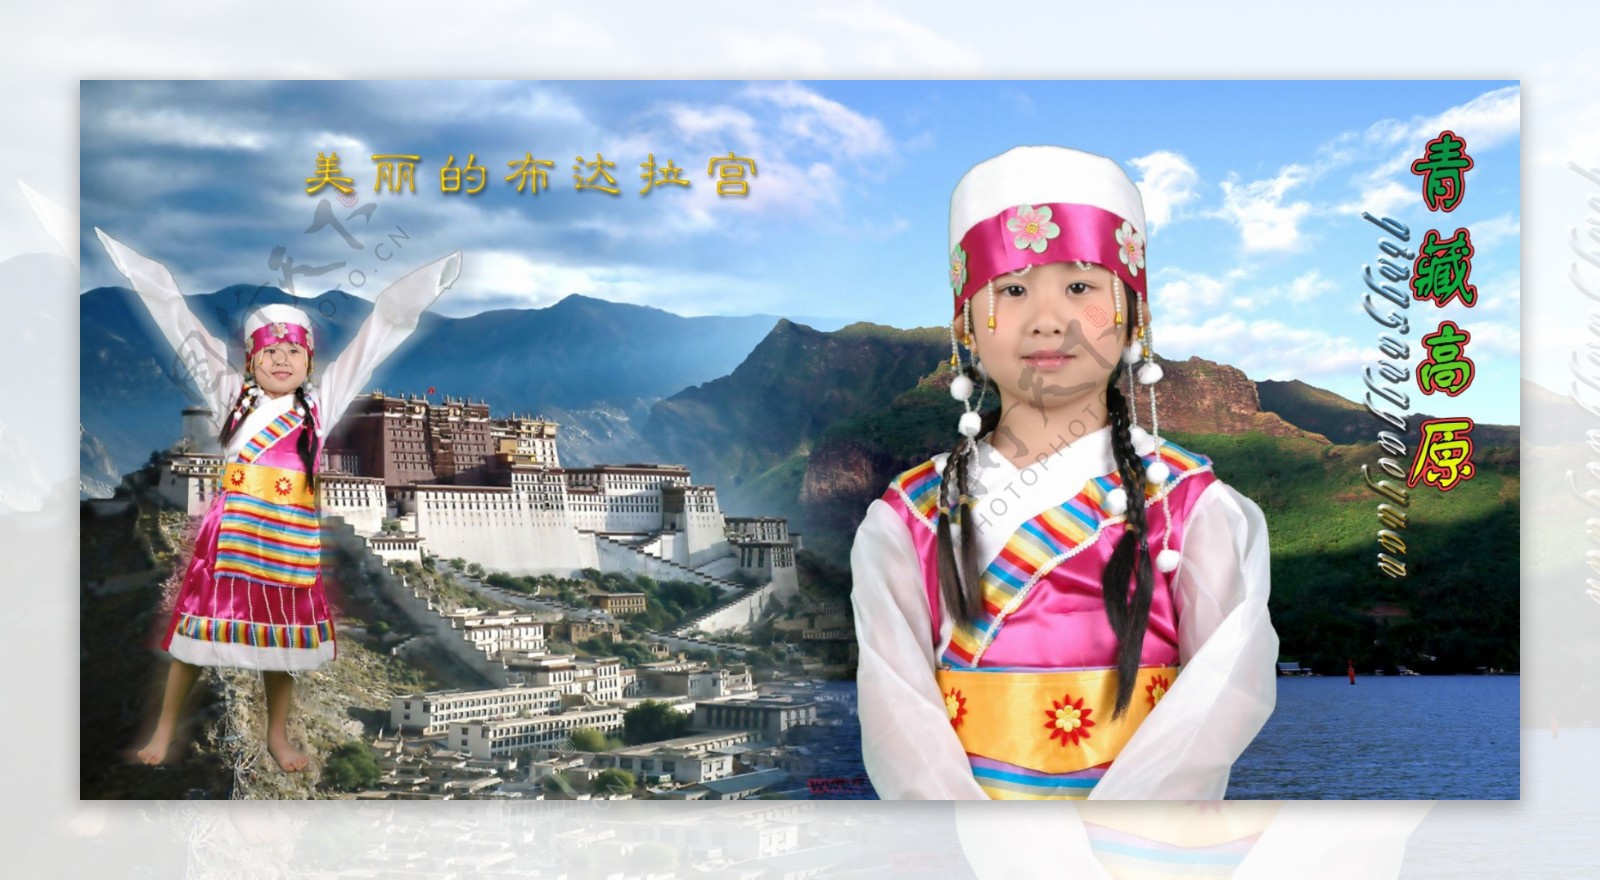 儿童模板儿童摄影模板儿童照片模板儿童相册模板西藏风情宝贝超级可爱psd分层素材源文件女孩少数名族